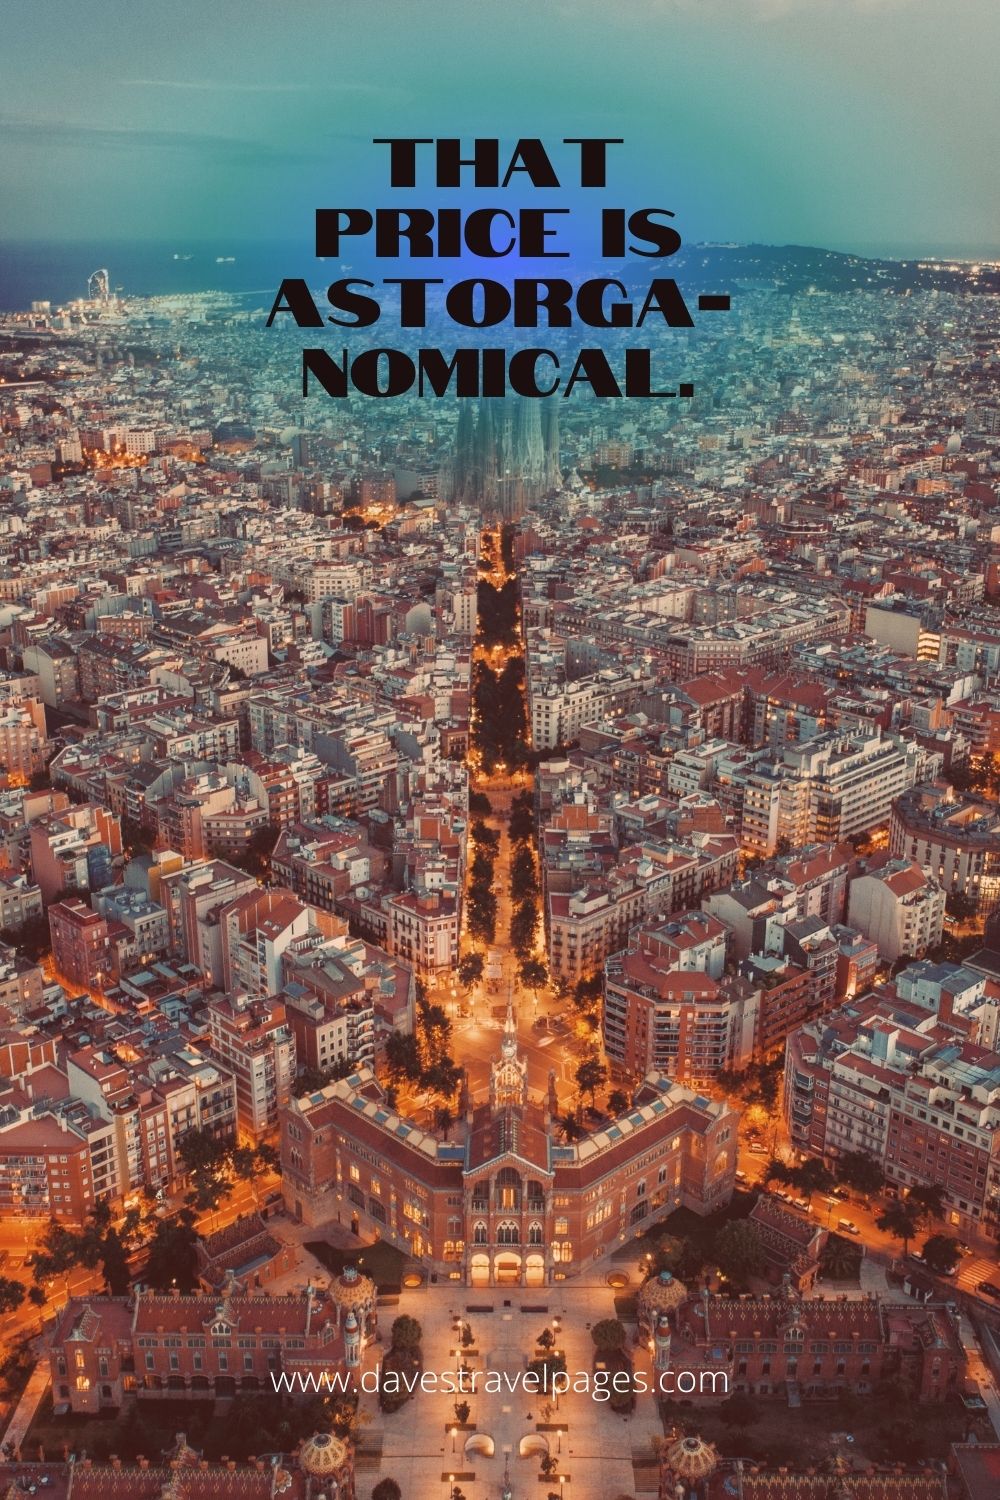 That price is Astorga-nomical